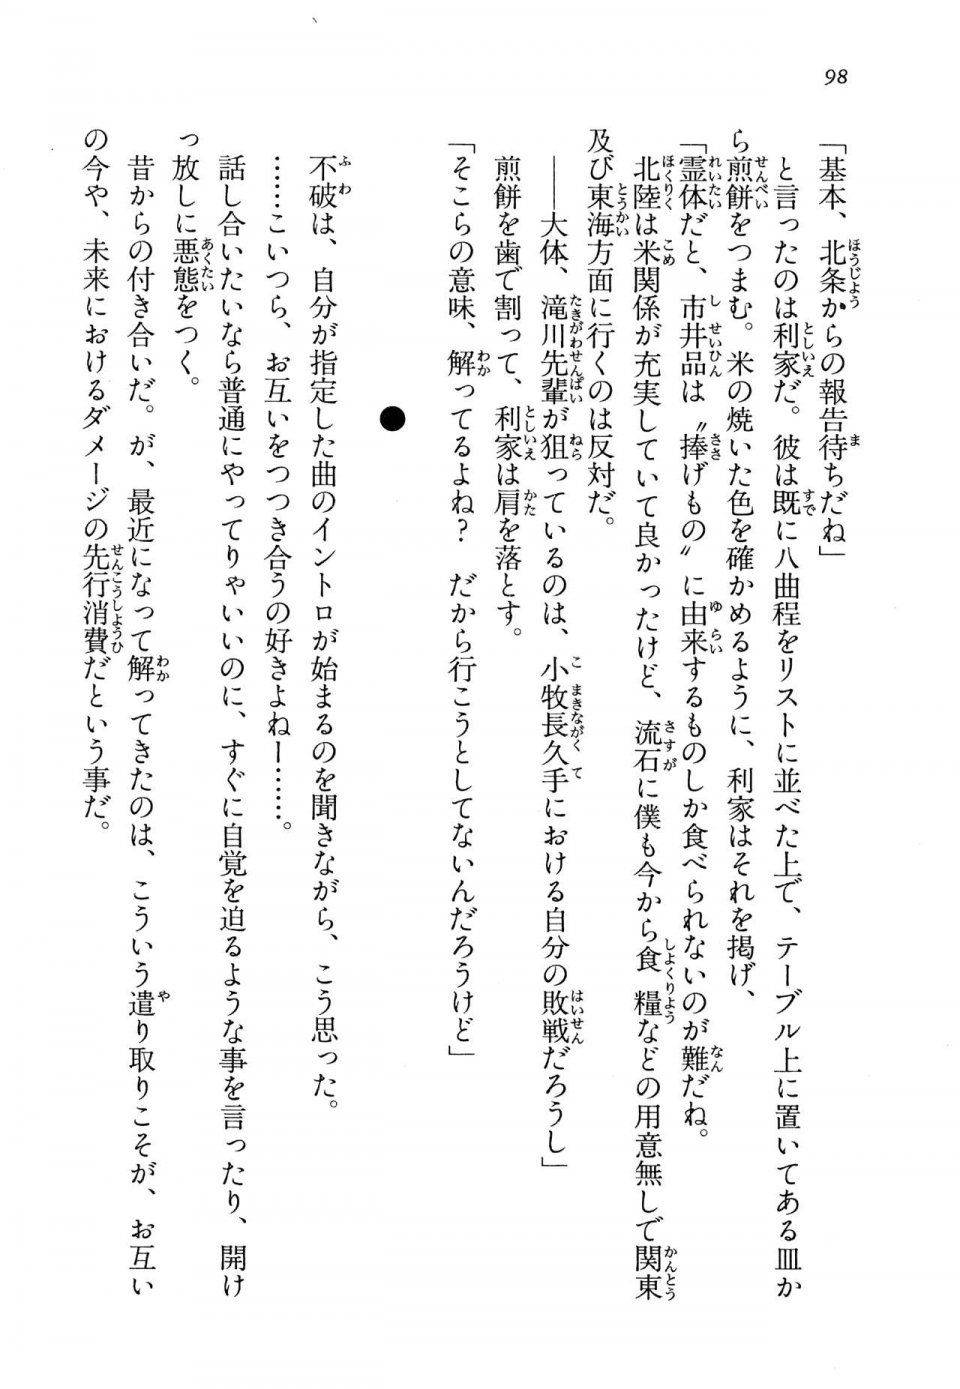 Kyoukai Senjou no Horizon LN Vol 13(6A) - Photo #98